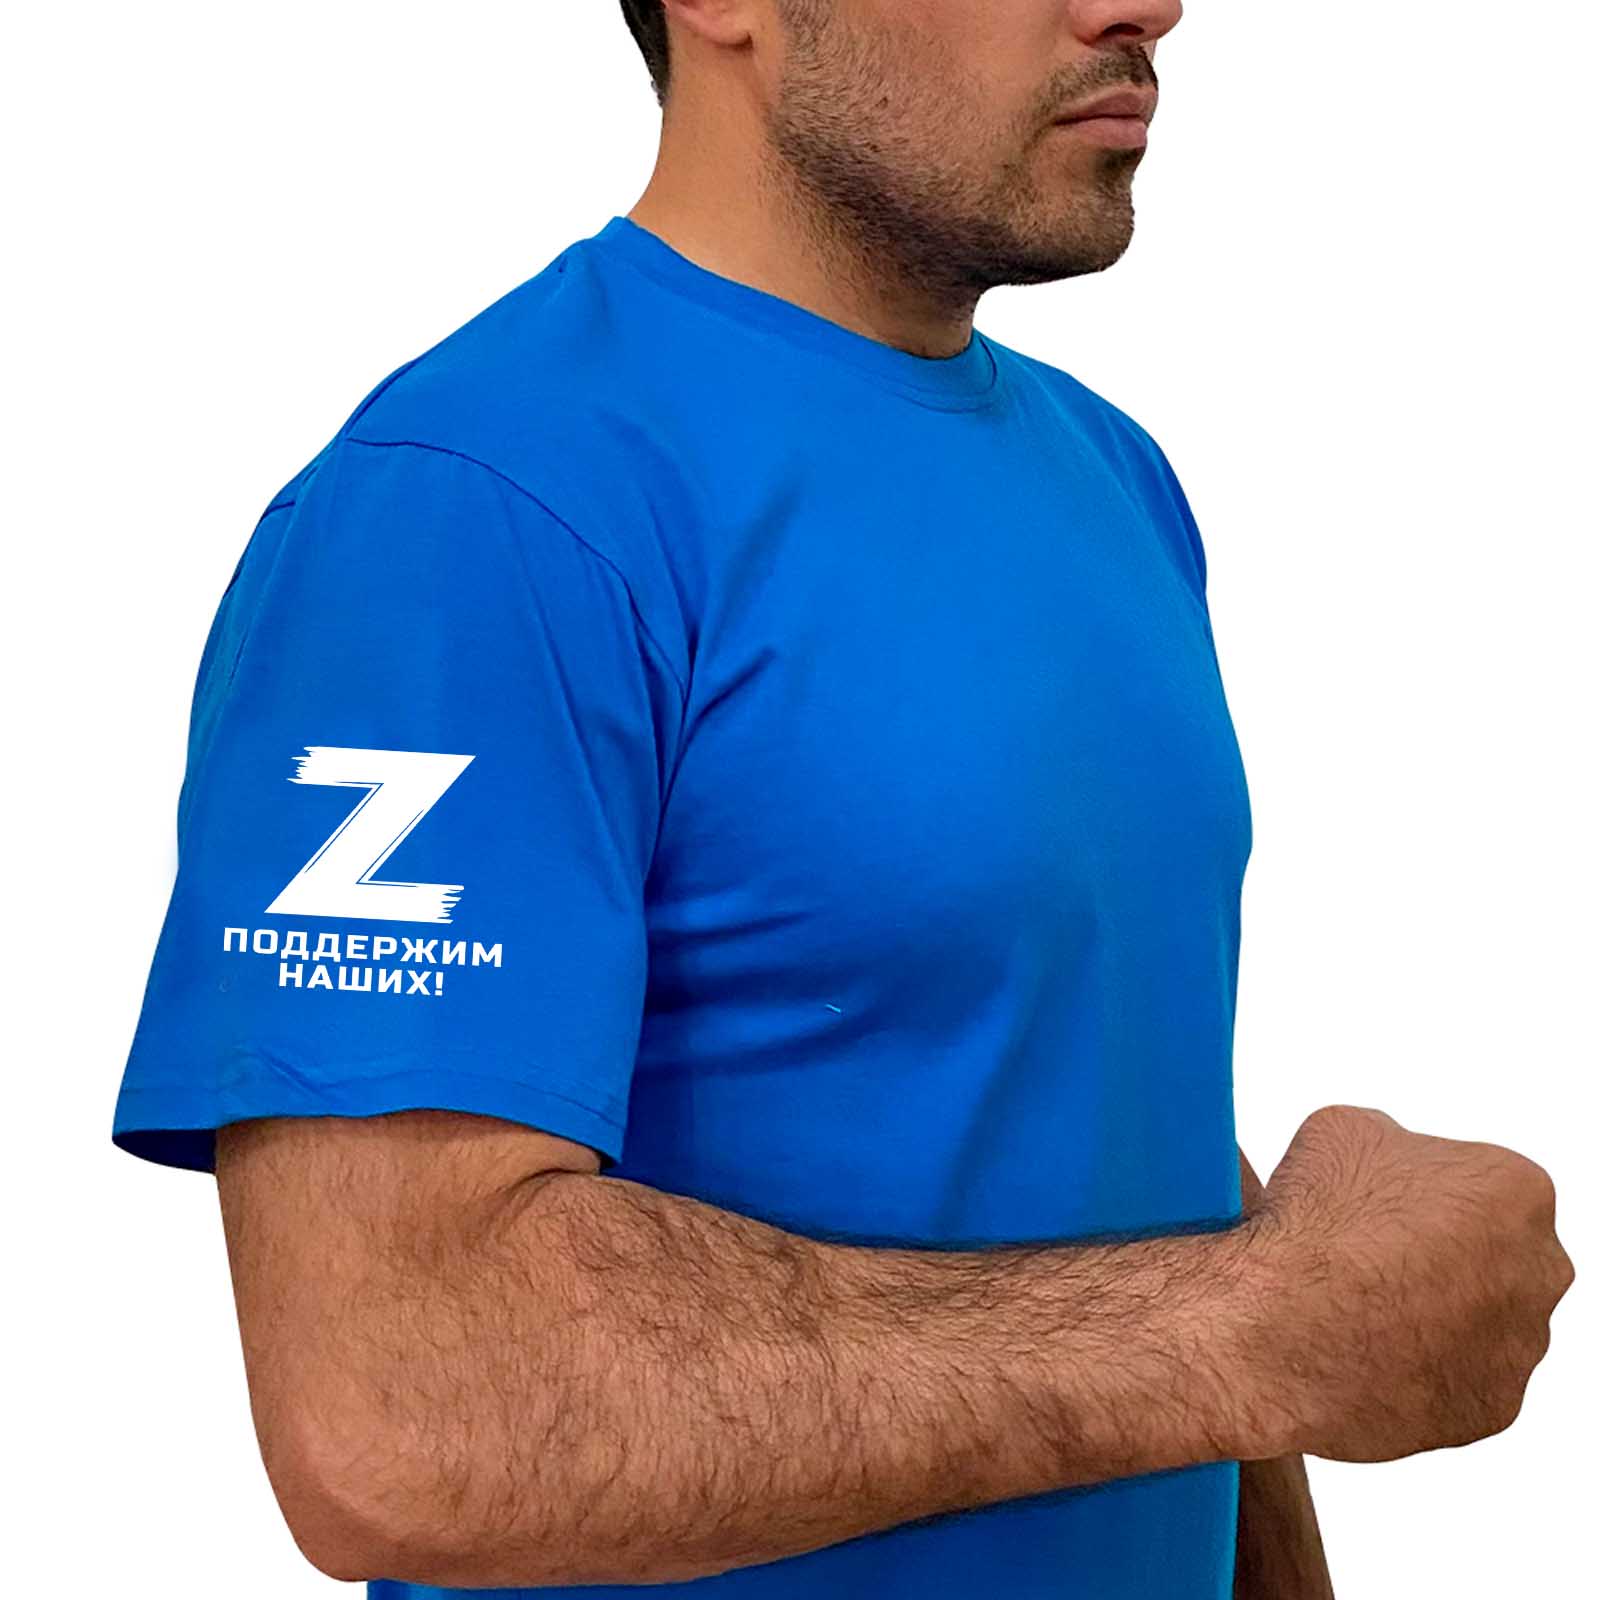 Купить стильную мужскую футболку Z онлайн выгодно